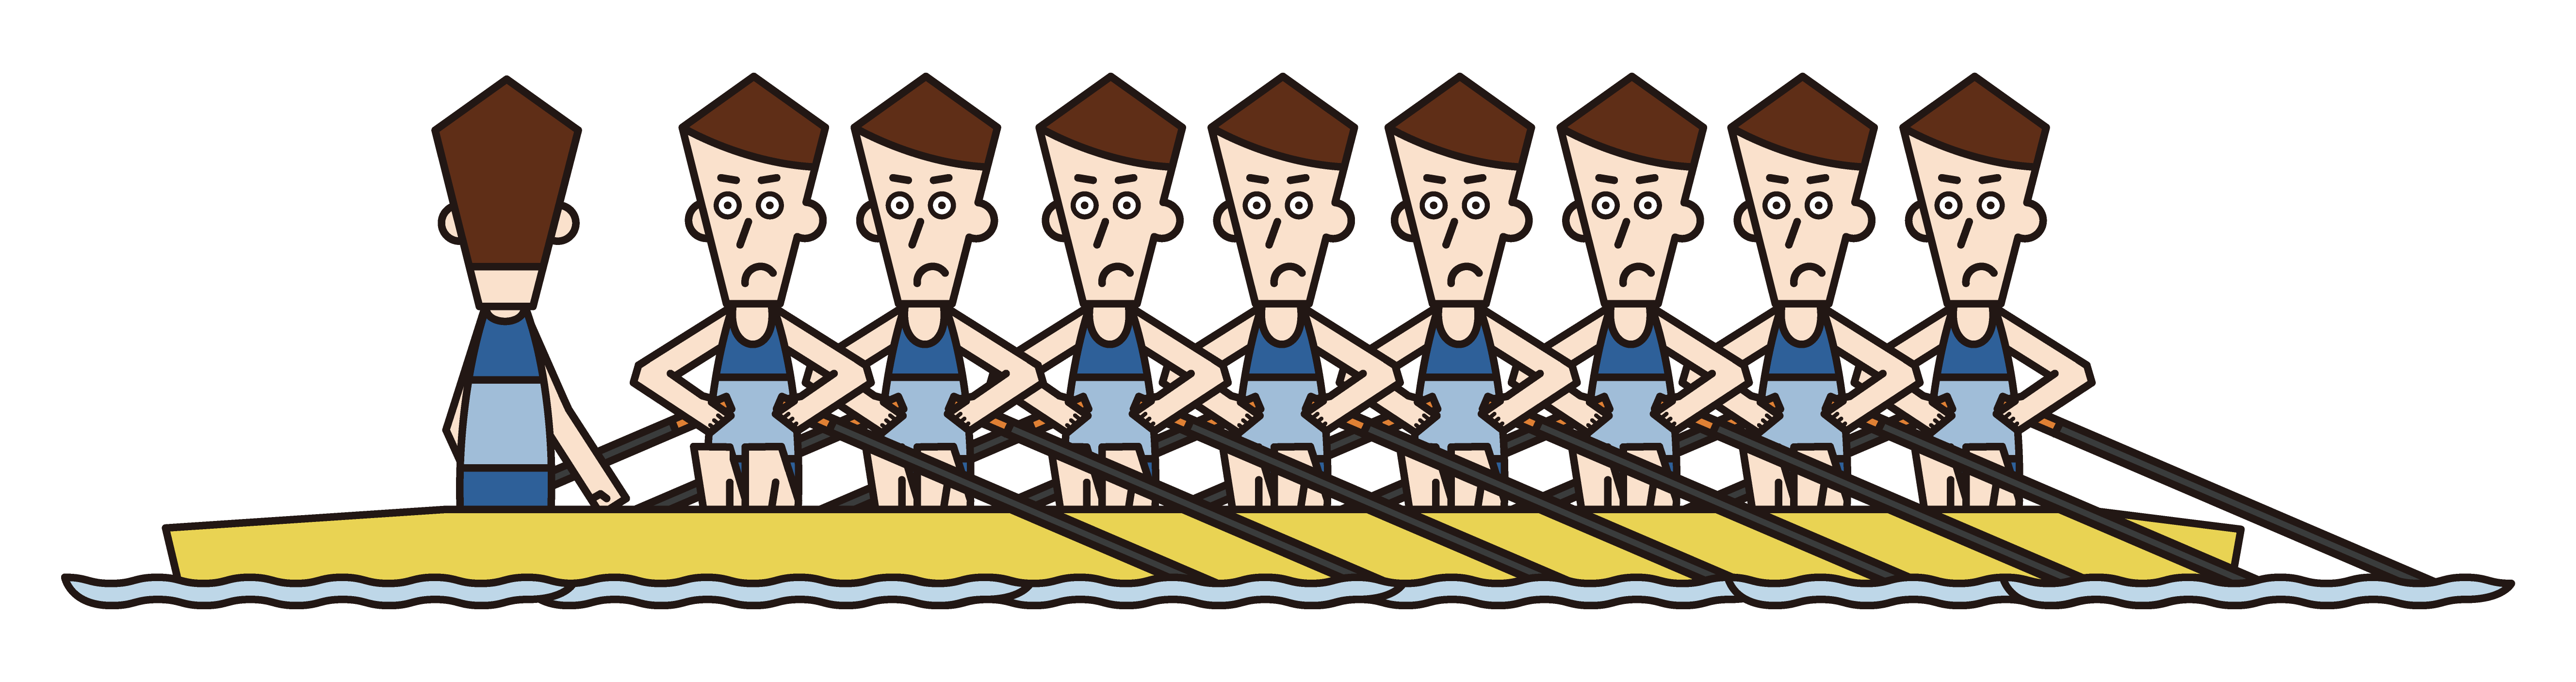 ボート競技（エイト）の選手たち（男性）のイラスト